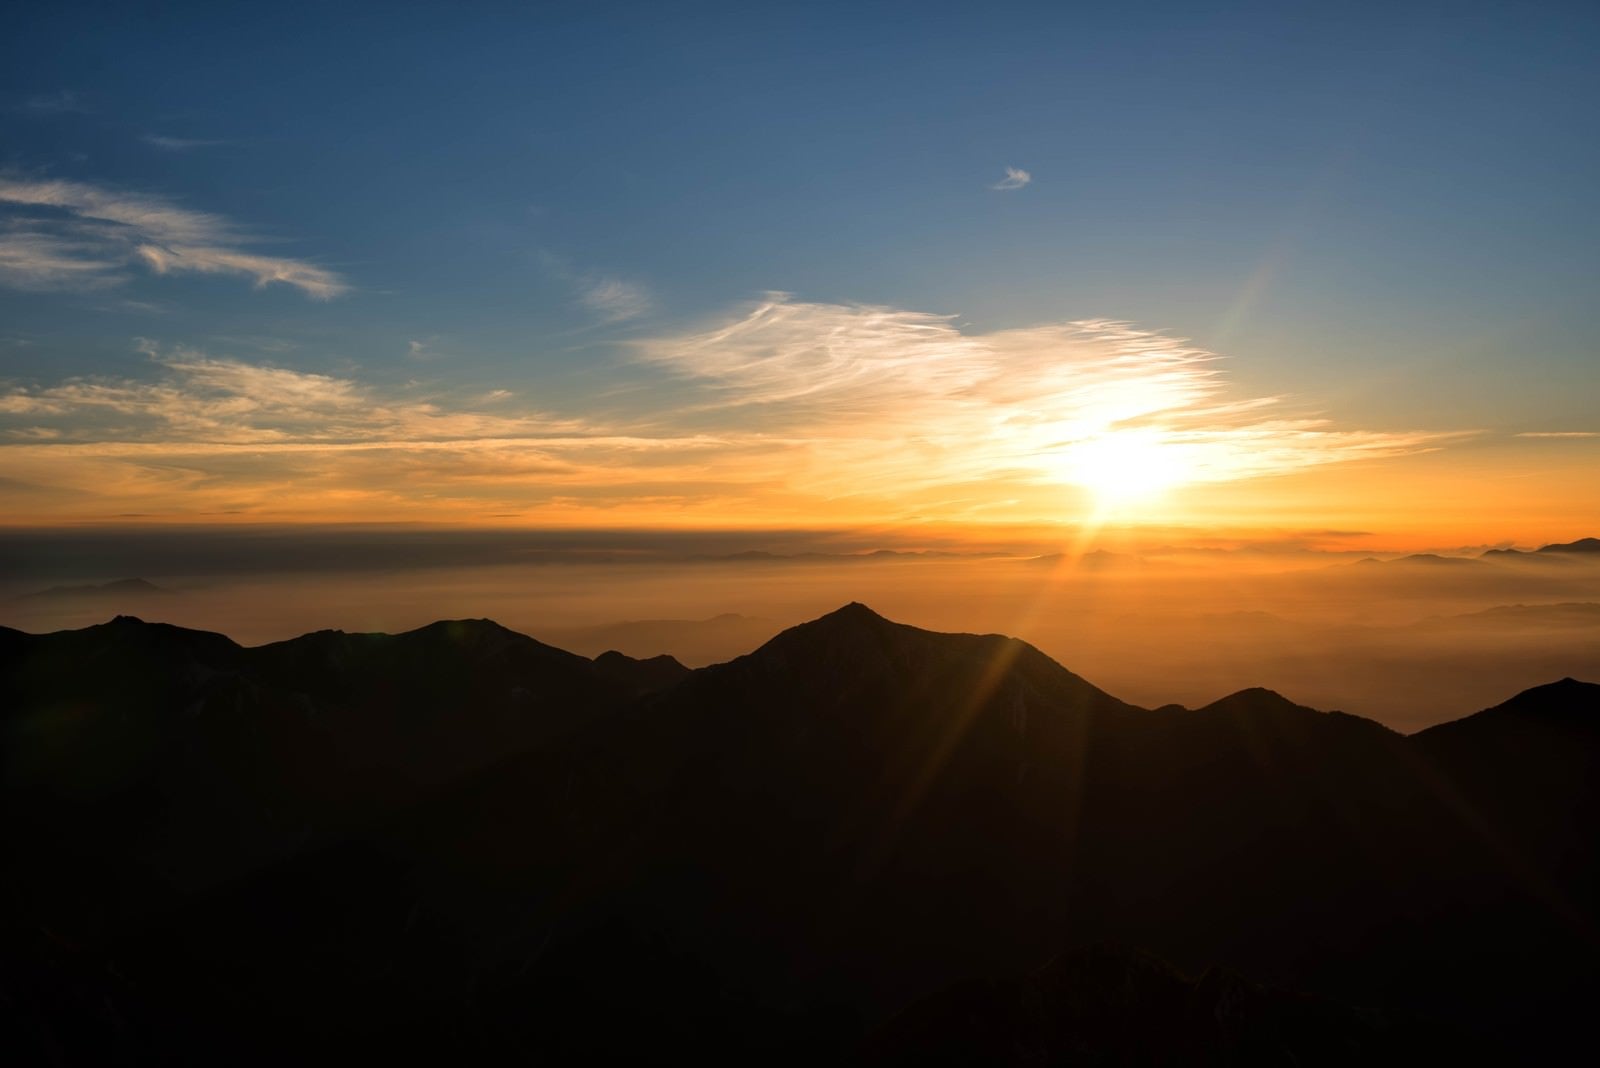 「常念山脈から昇る朝日」の写真